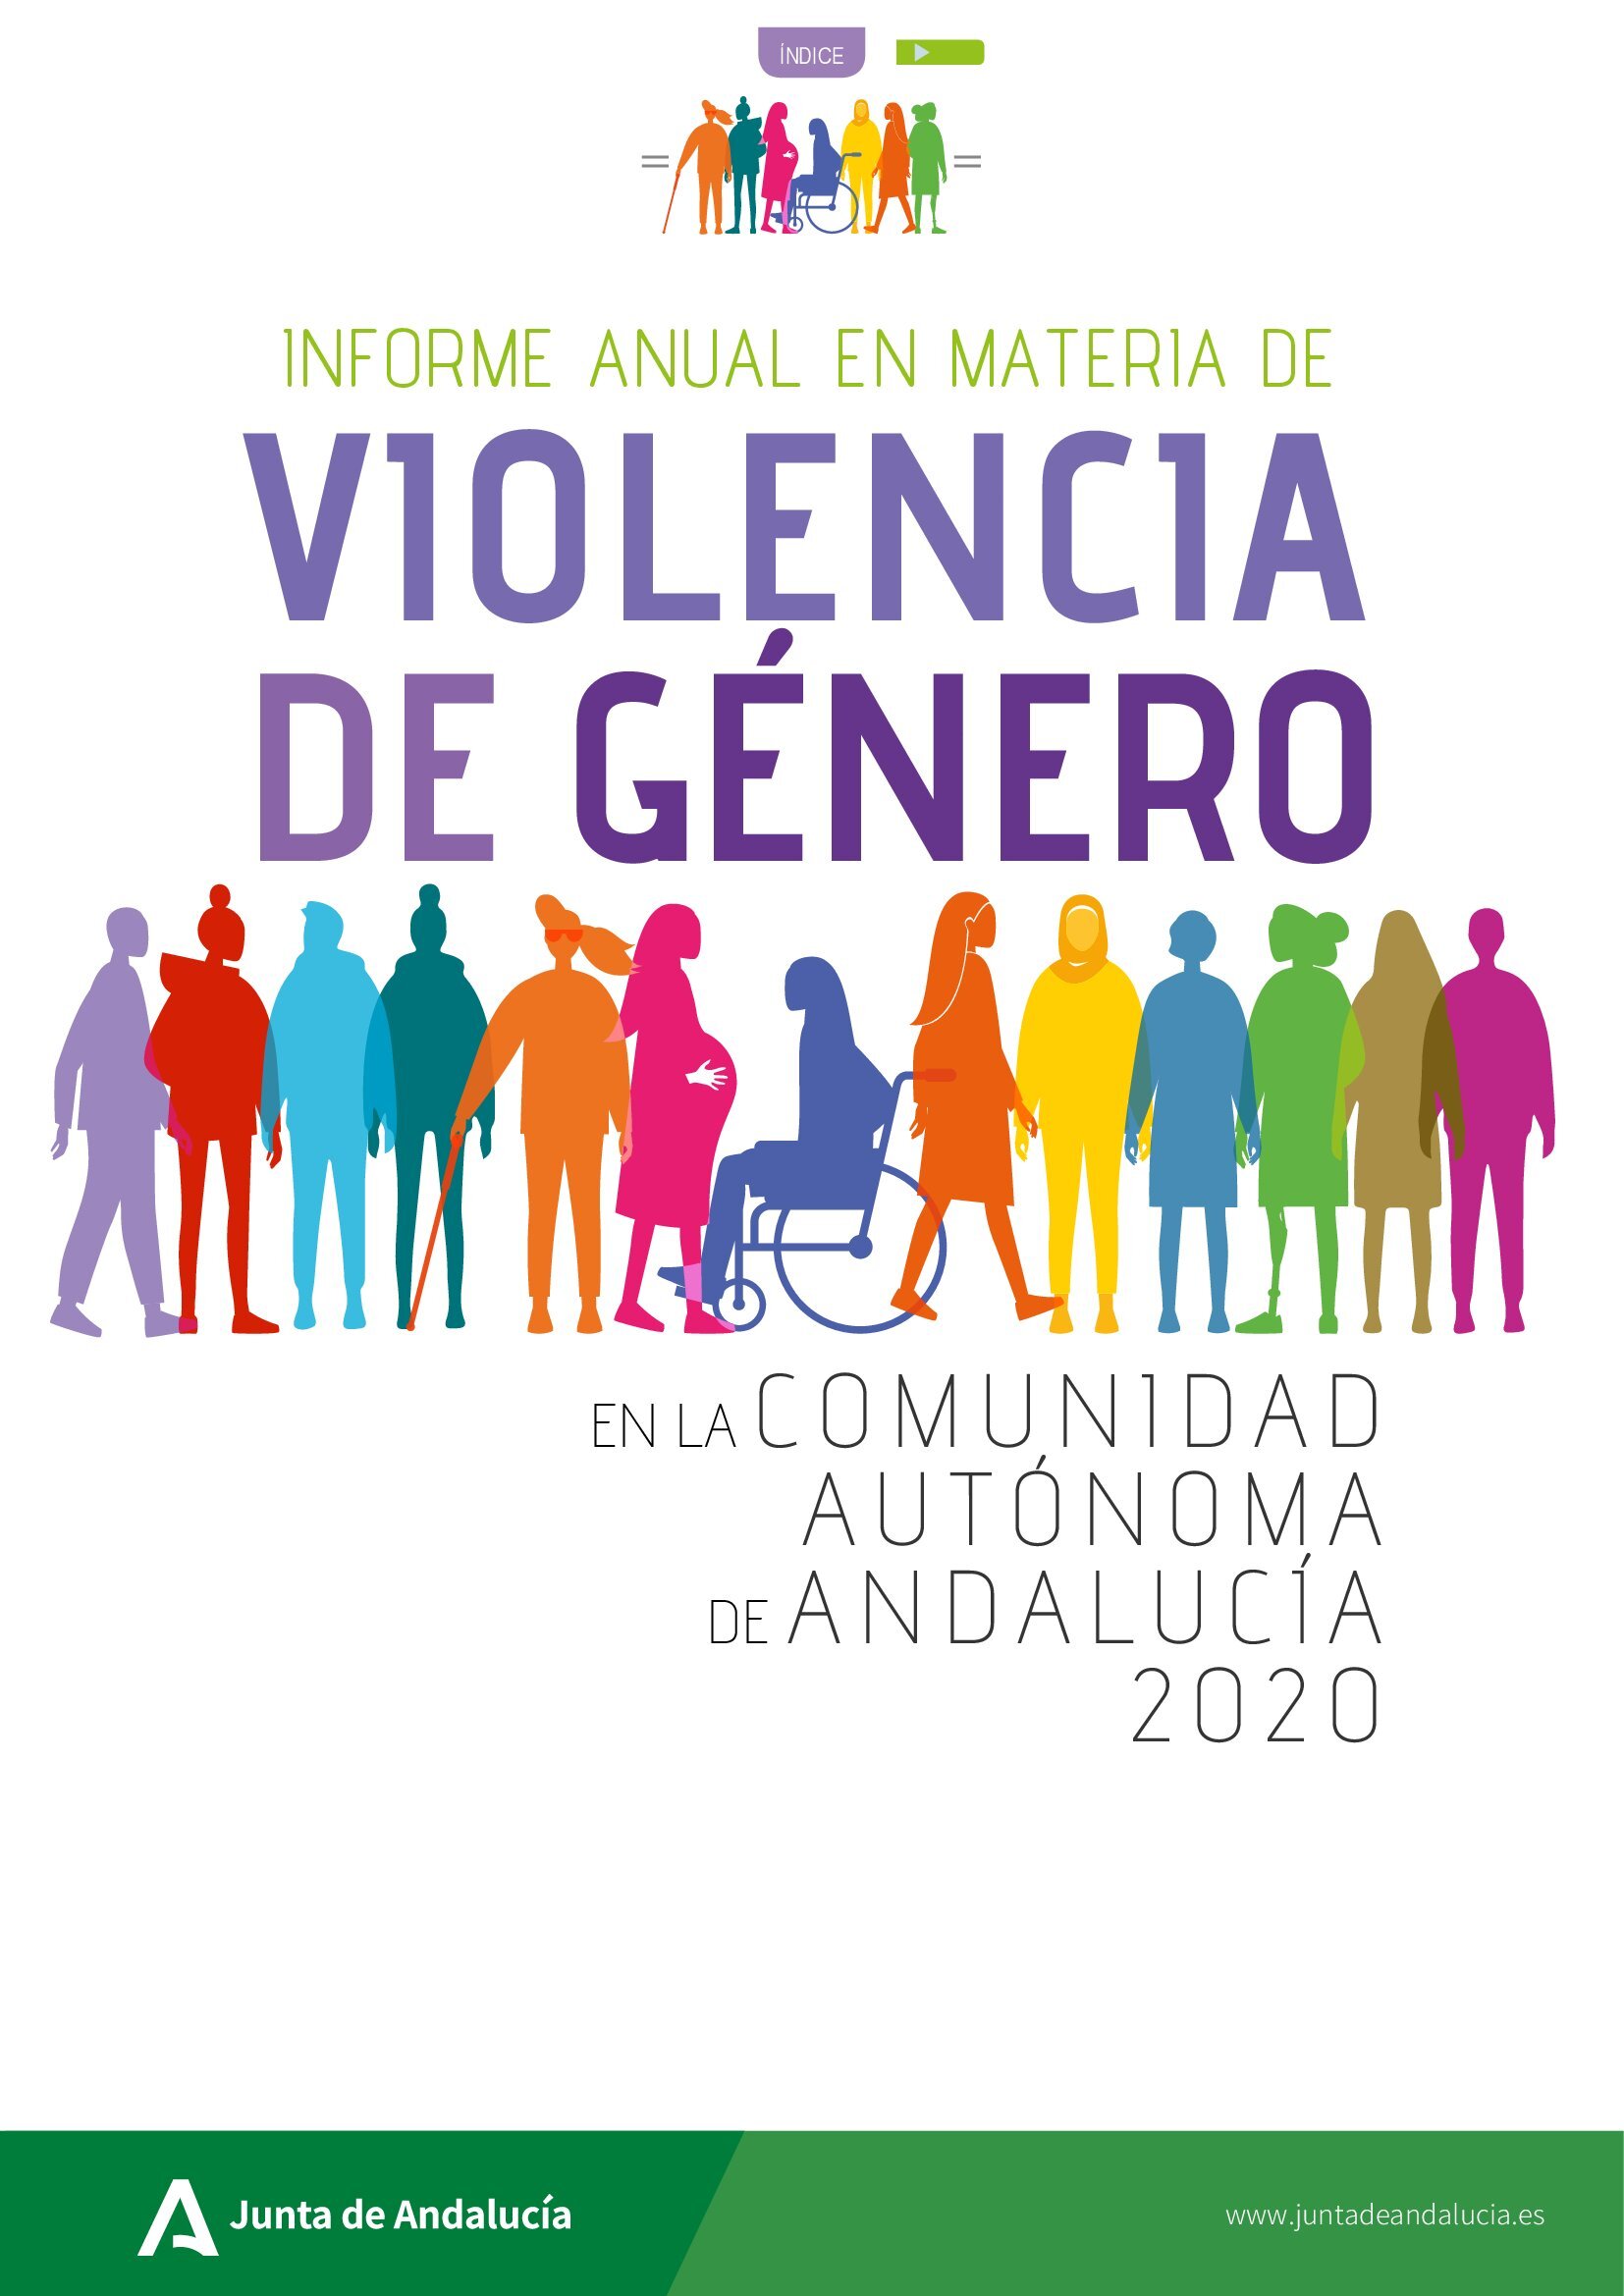 Informe anual en materia de Violencia de Género en la Comunidad Autónoma de Andalucía 2020